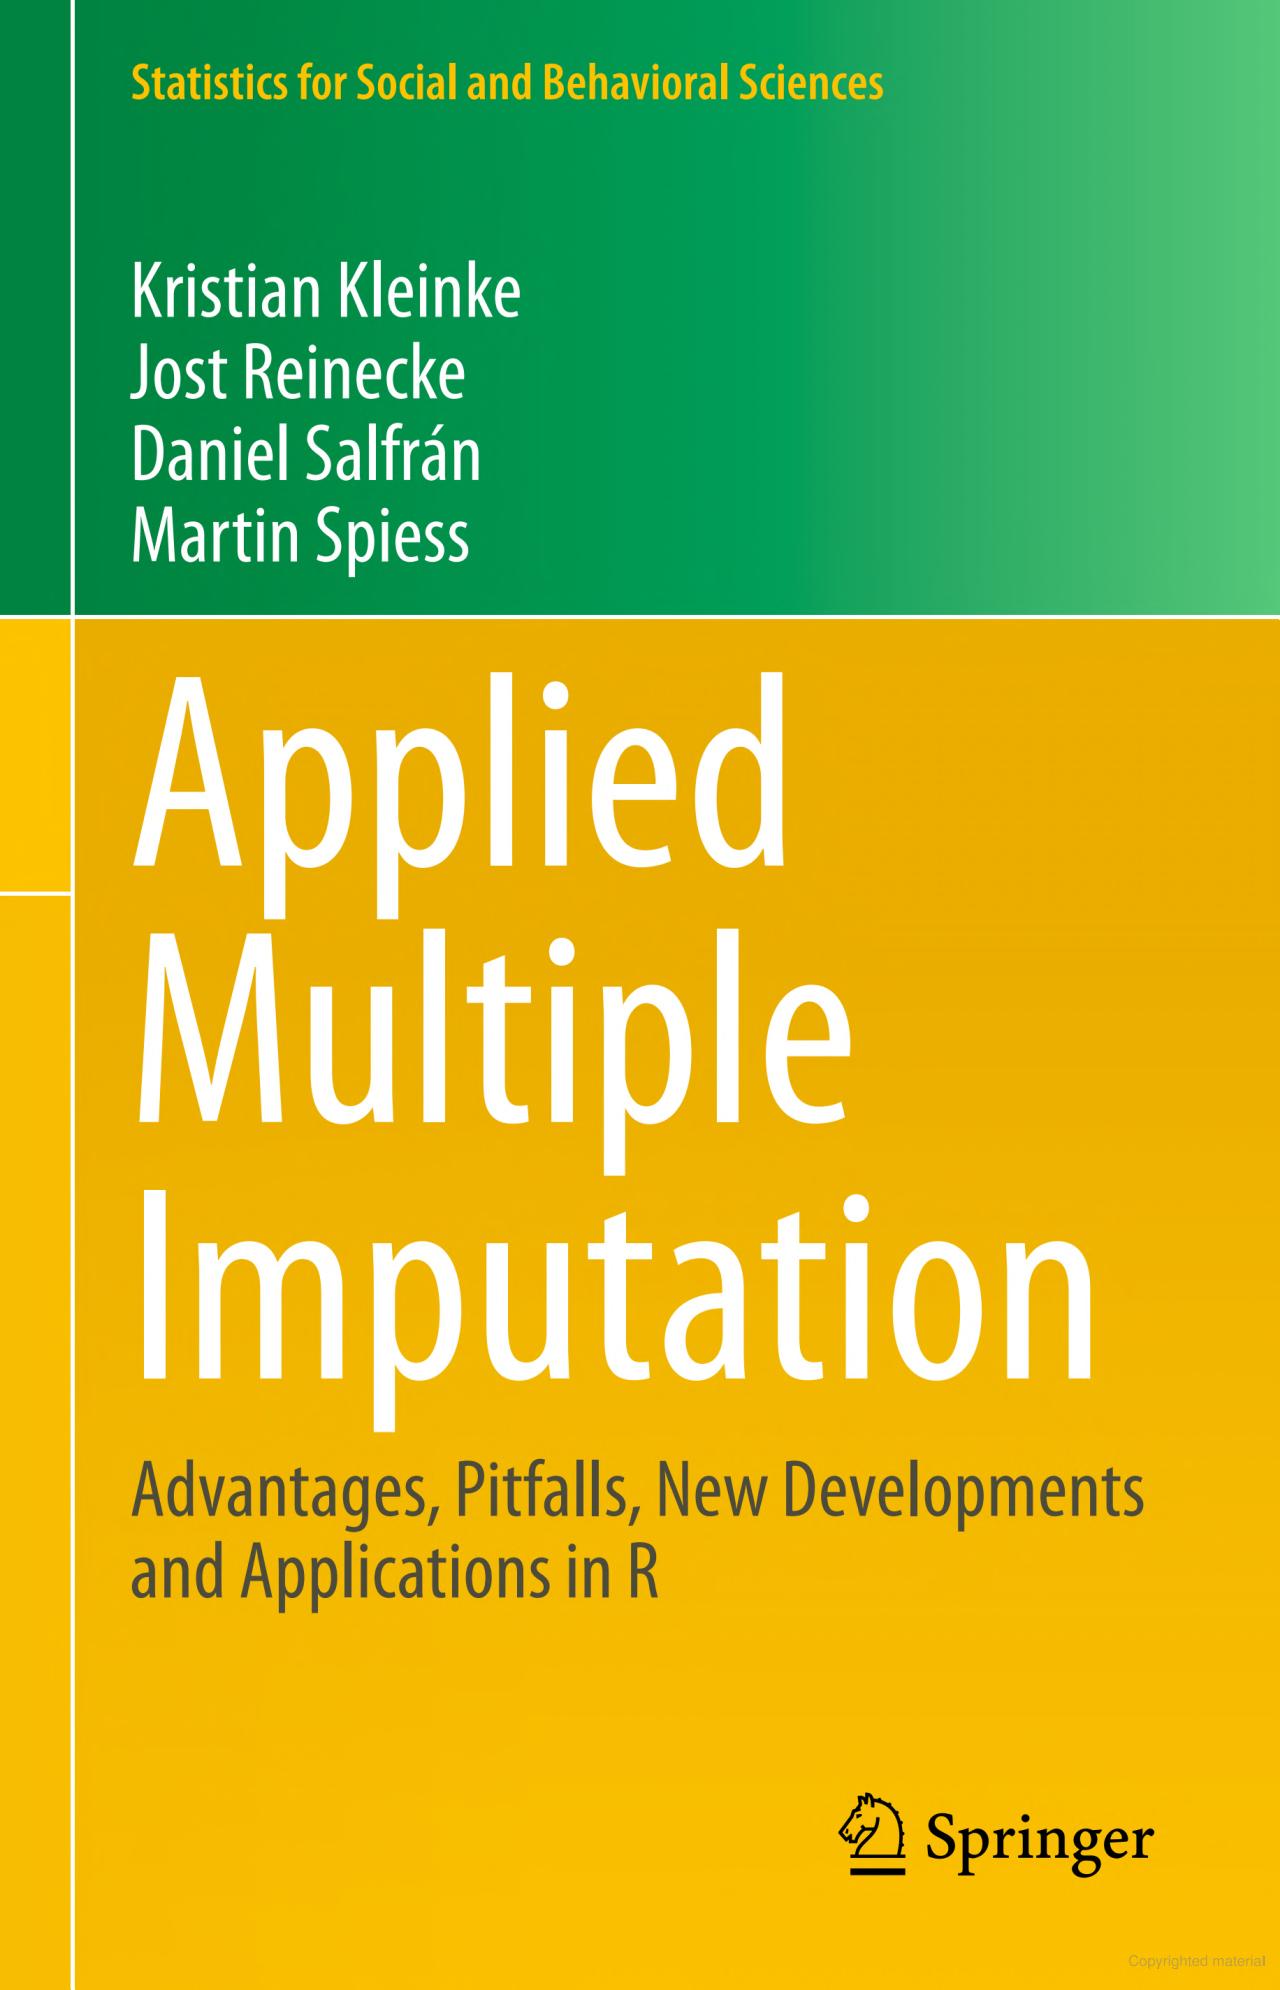 Applied Multiple Imputation